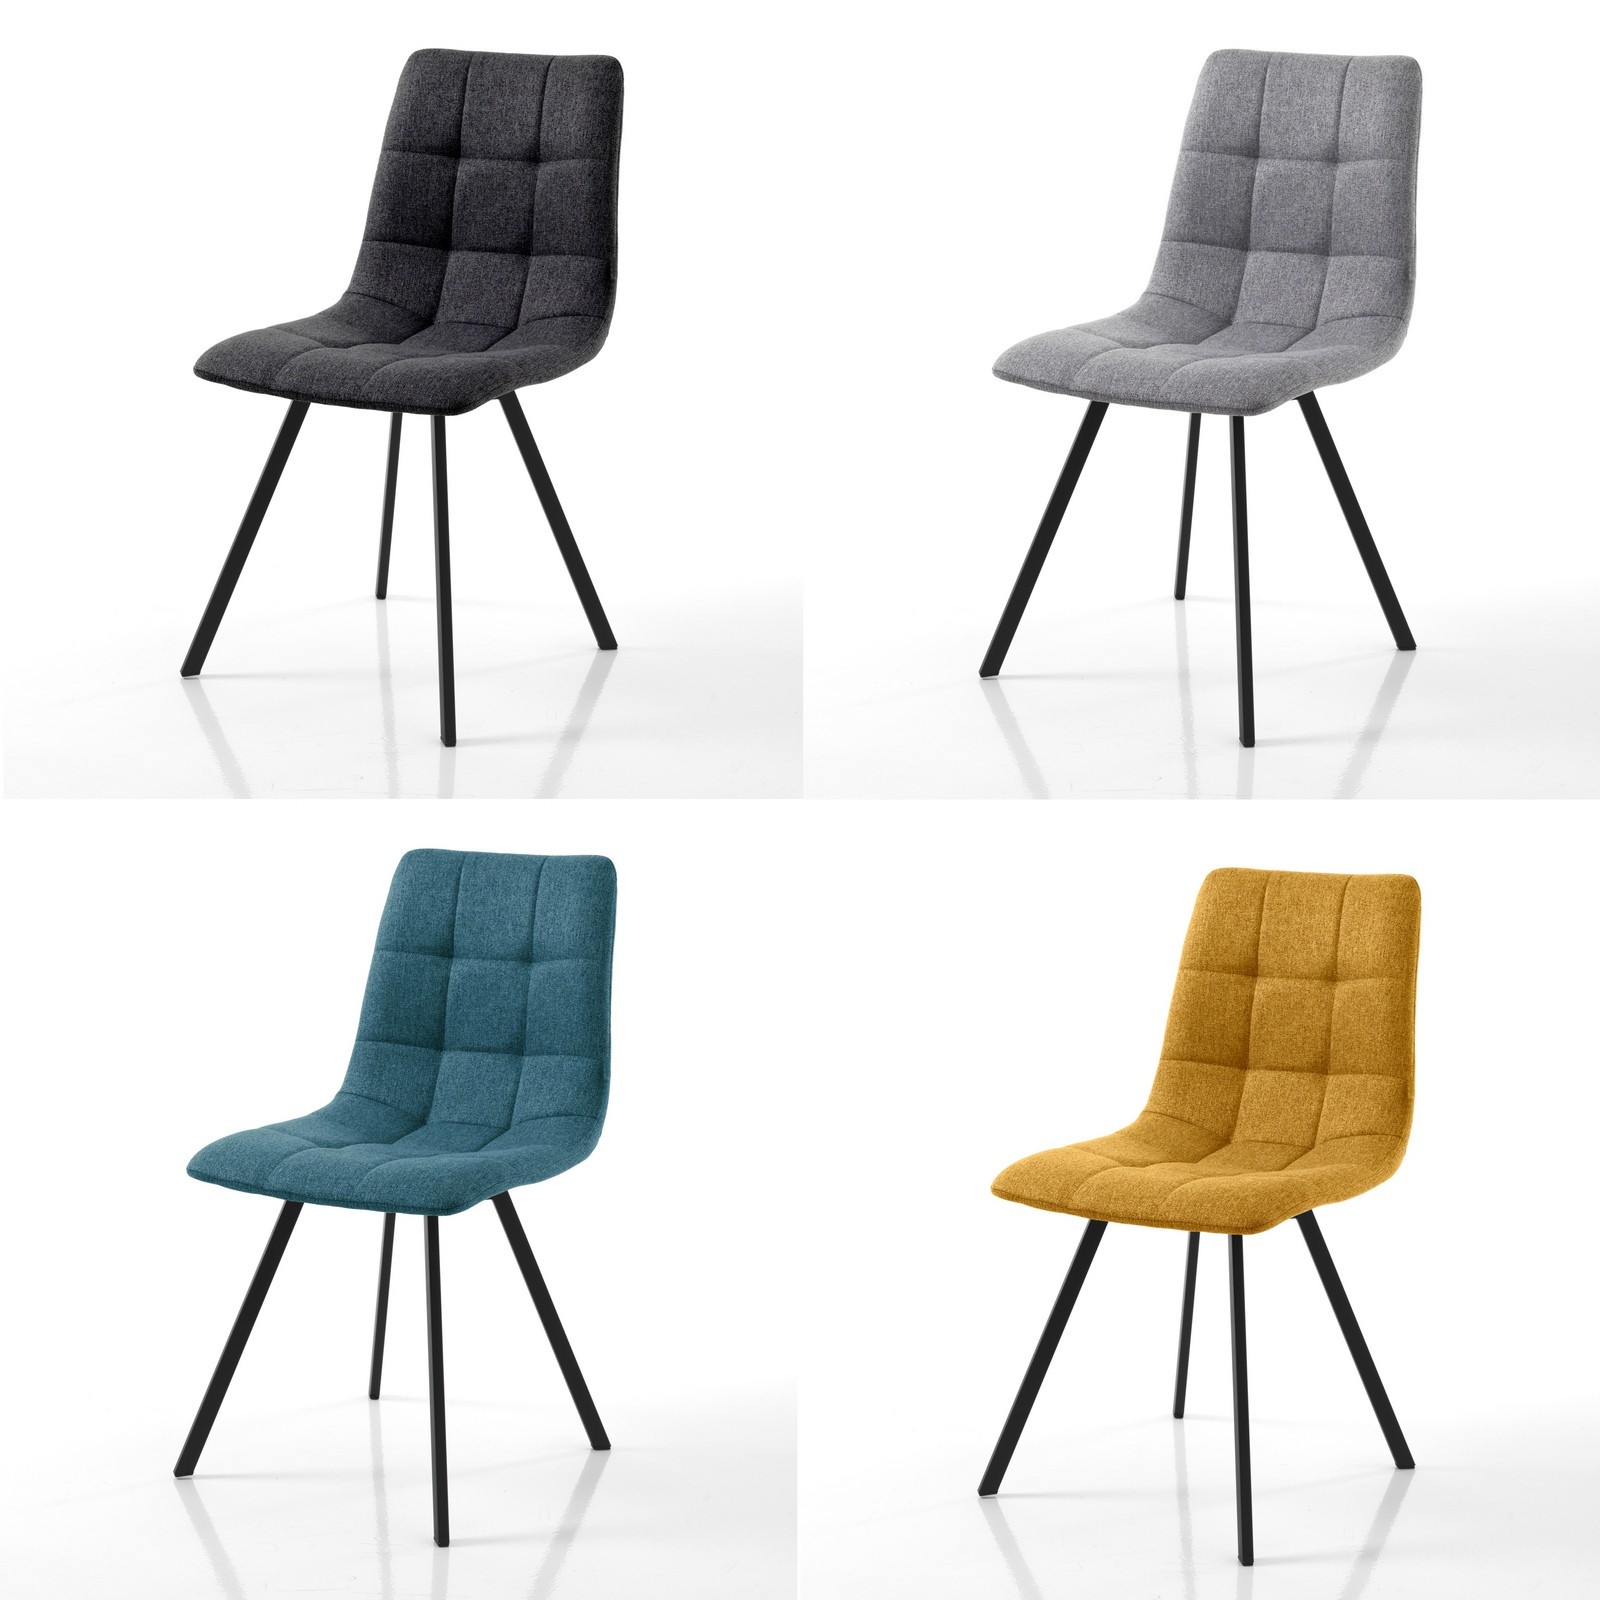 Sedia NEW UNITY COLORS (4 sedie colorate) 1 colore Grigio + 1 colore